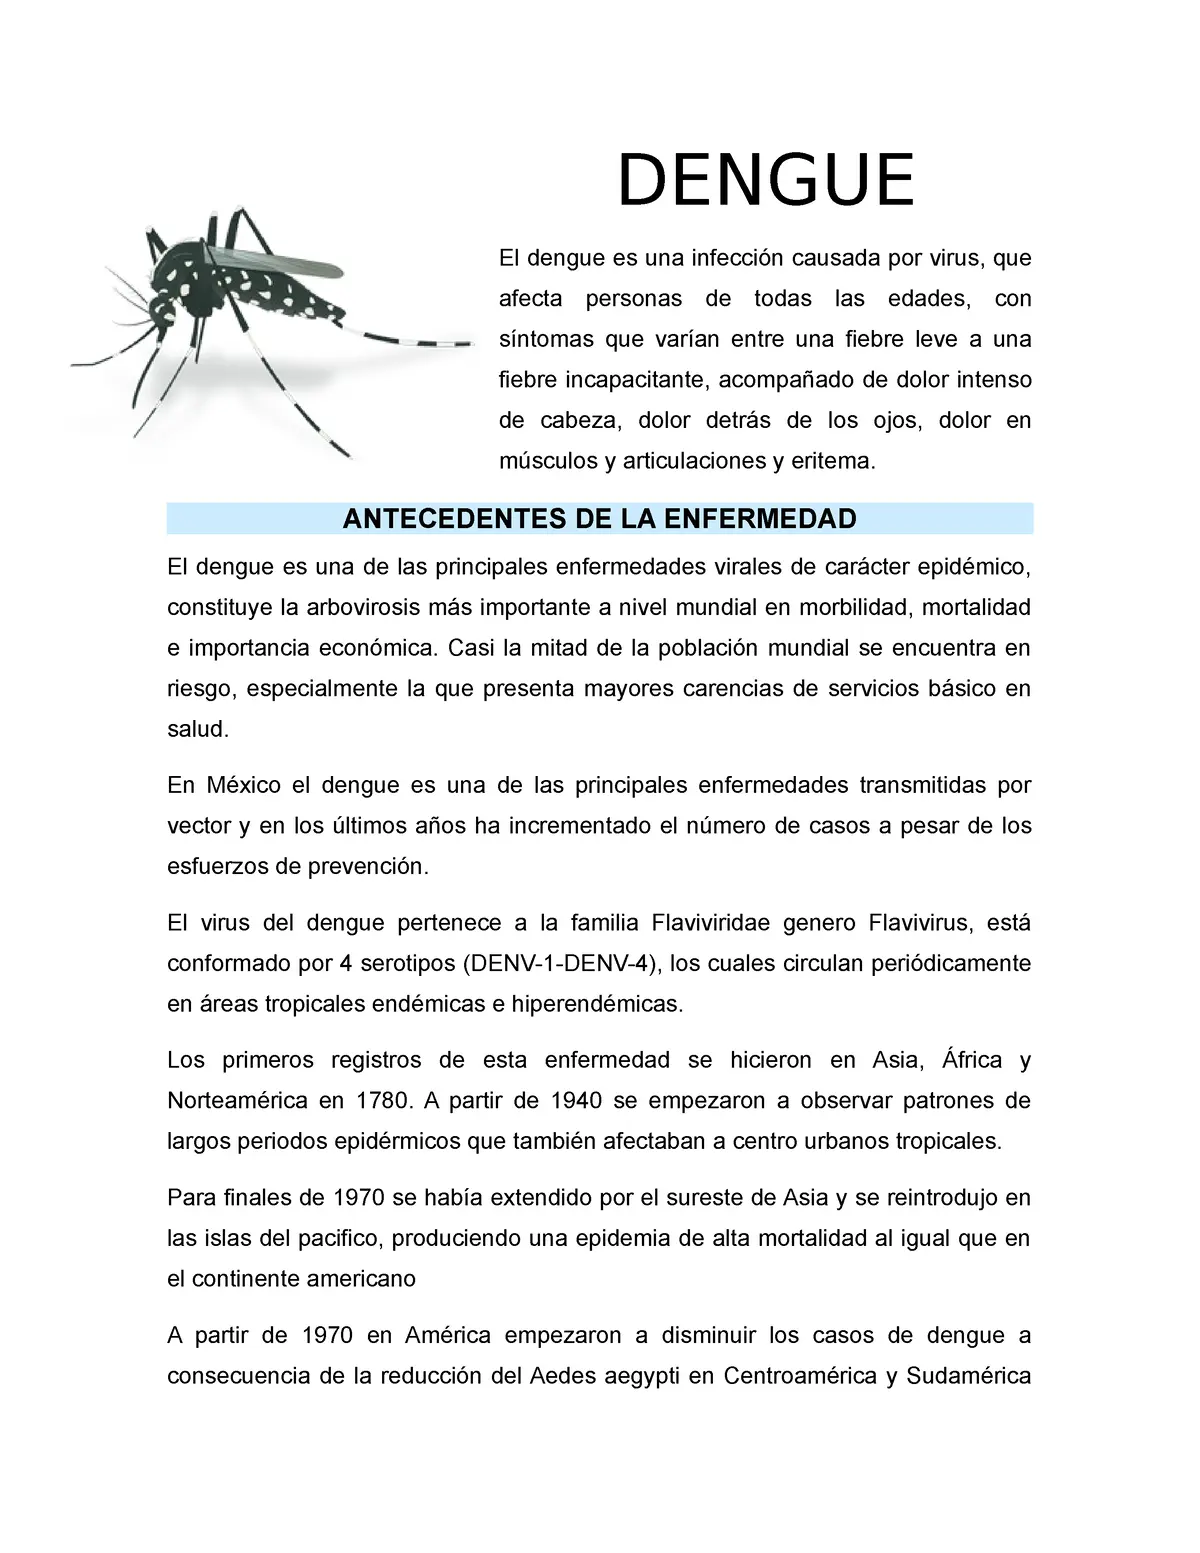 que es el dengue resumen - Qué es el dengue y porque se da